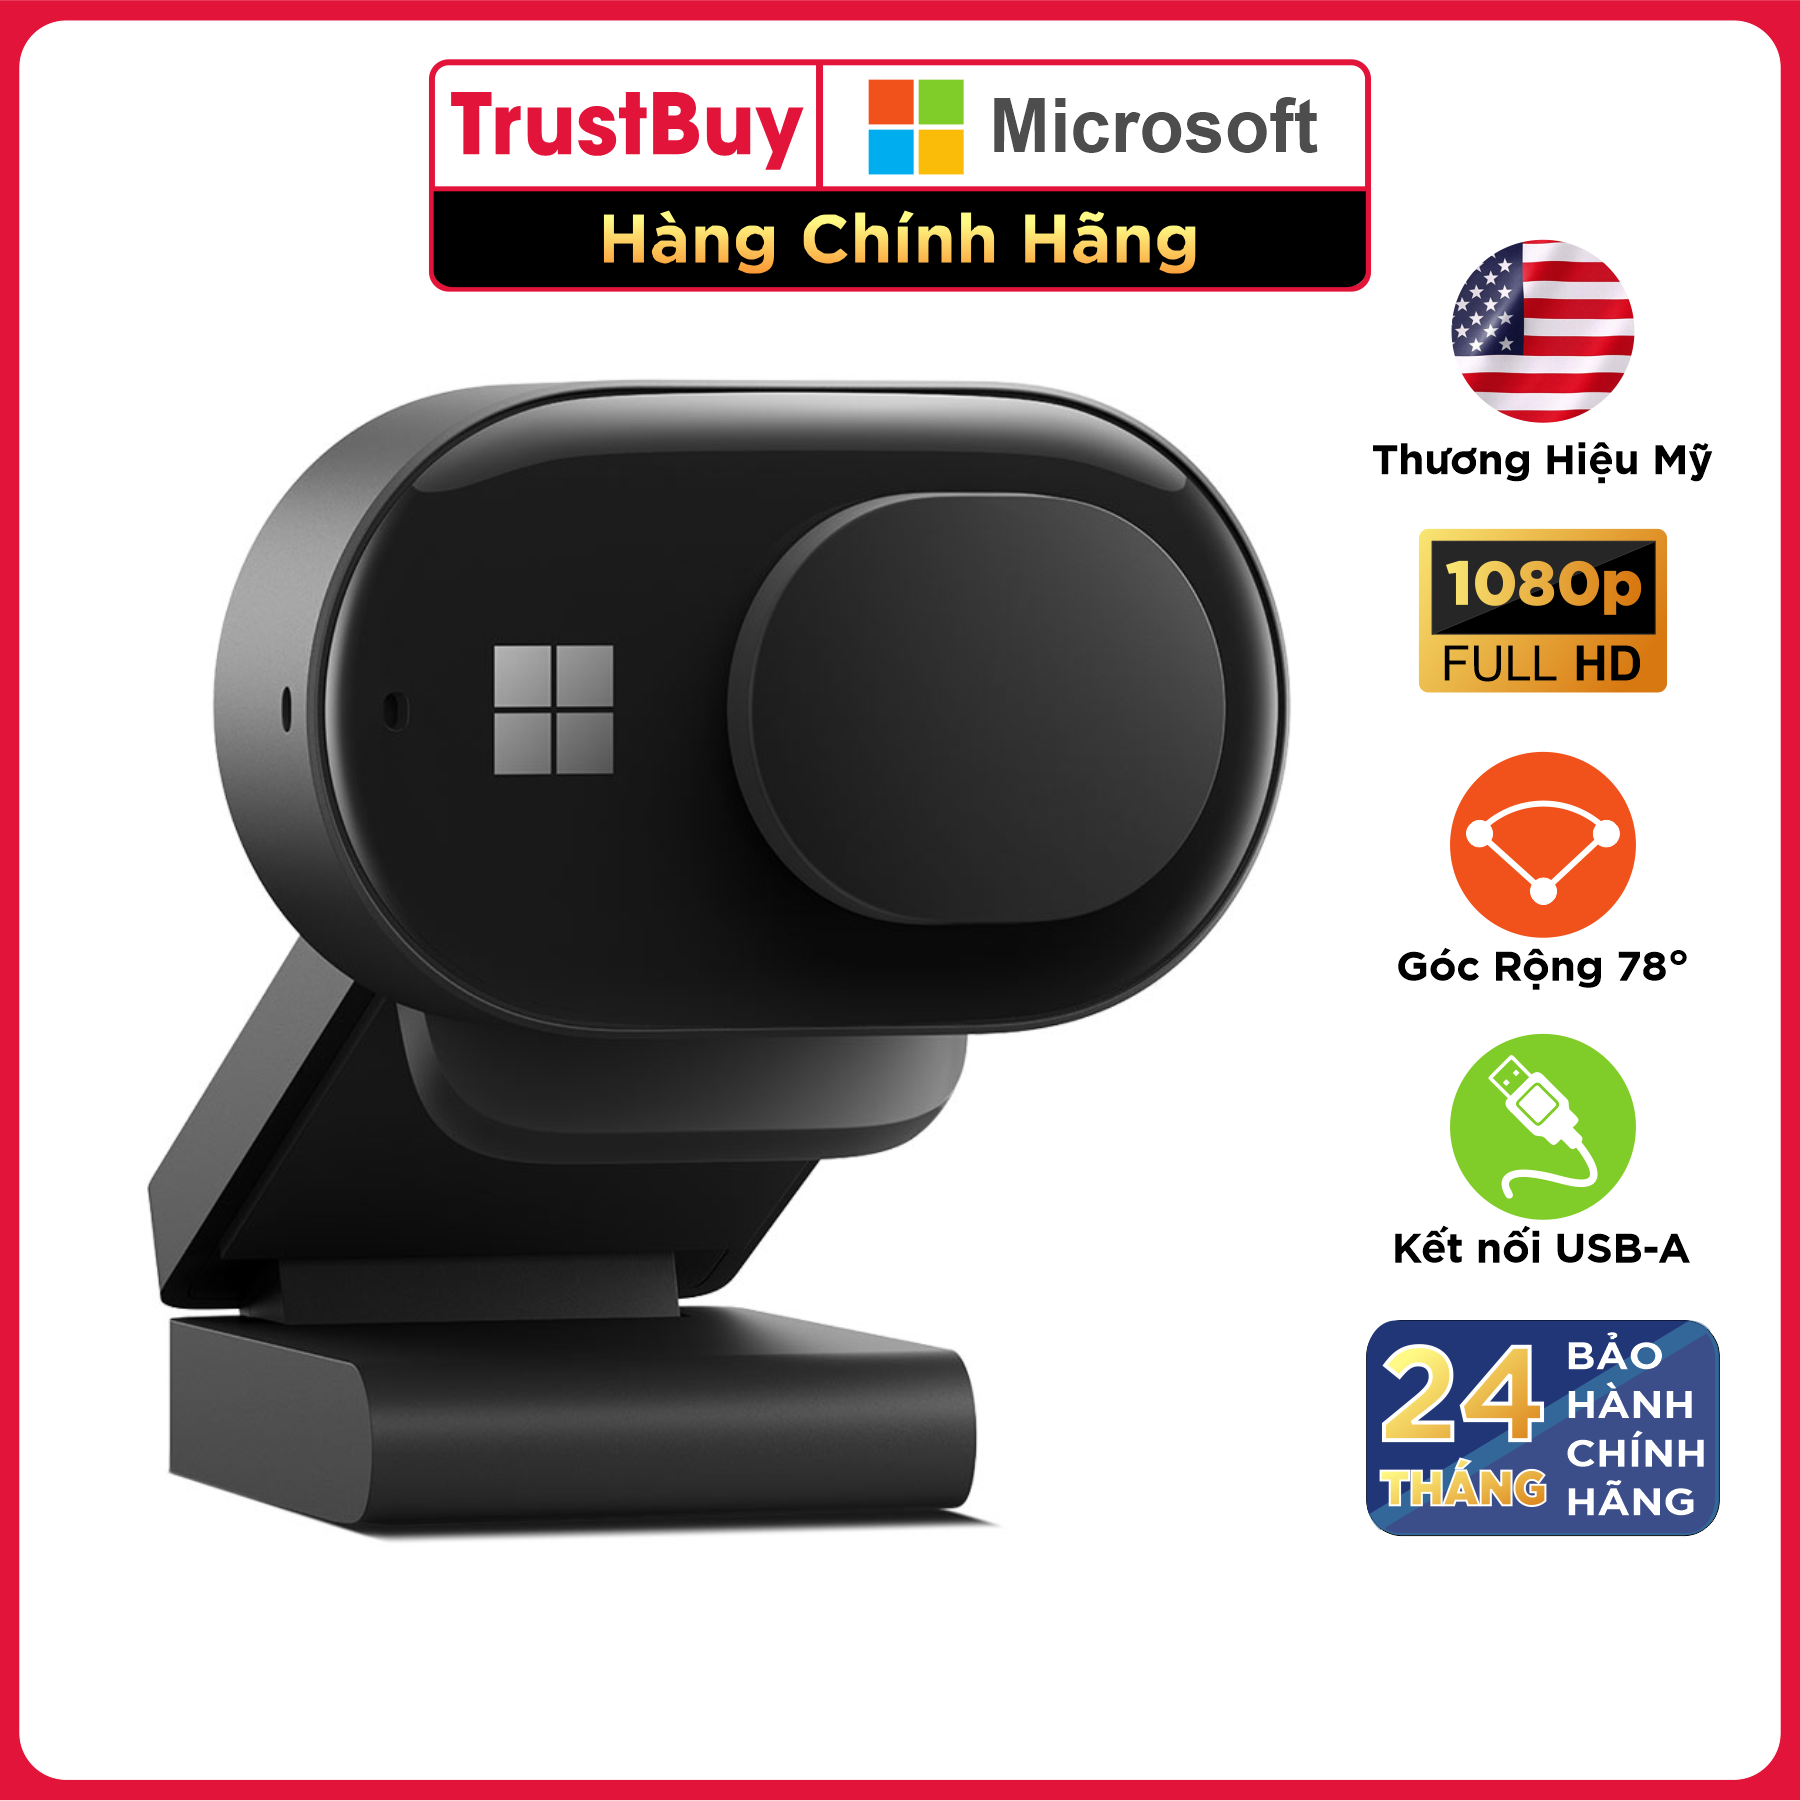 Webcam FullHD 1080p HDR Microsoft Modern Góc Rộng Đến 78 Độ - Hàng Chính Hãng